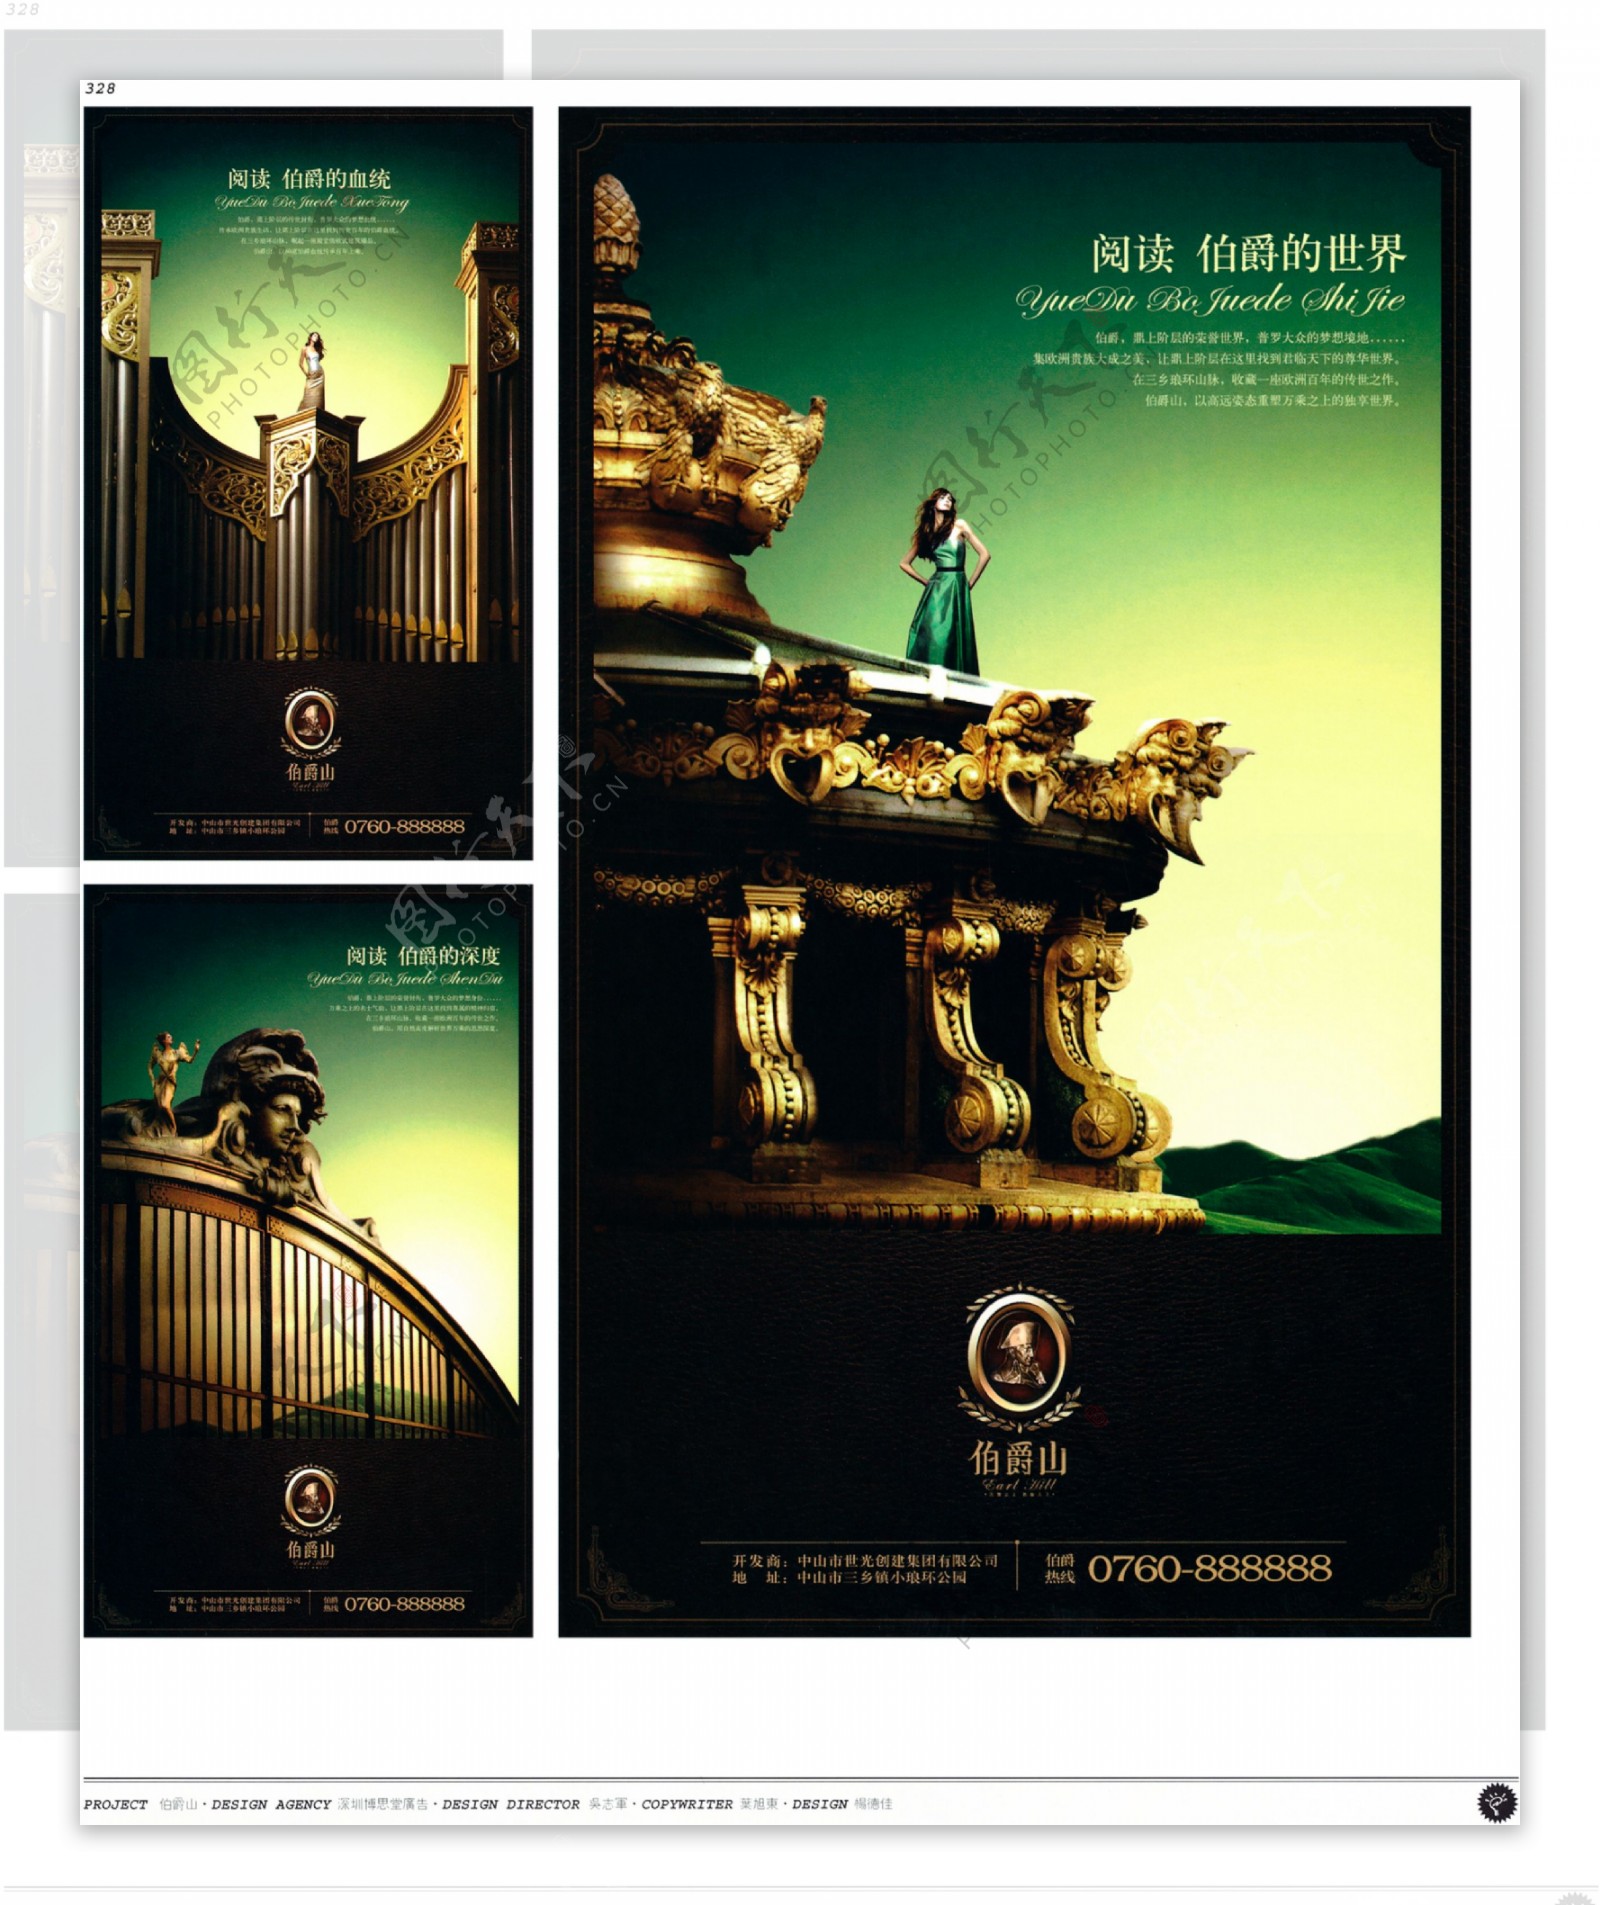 中国房地产广告年鉴第二册创意设计0310